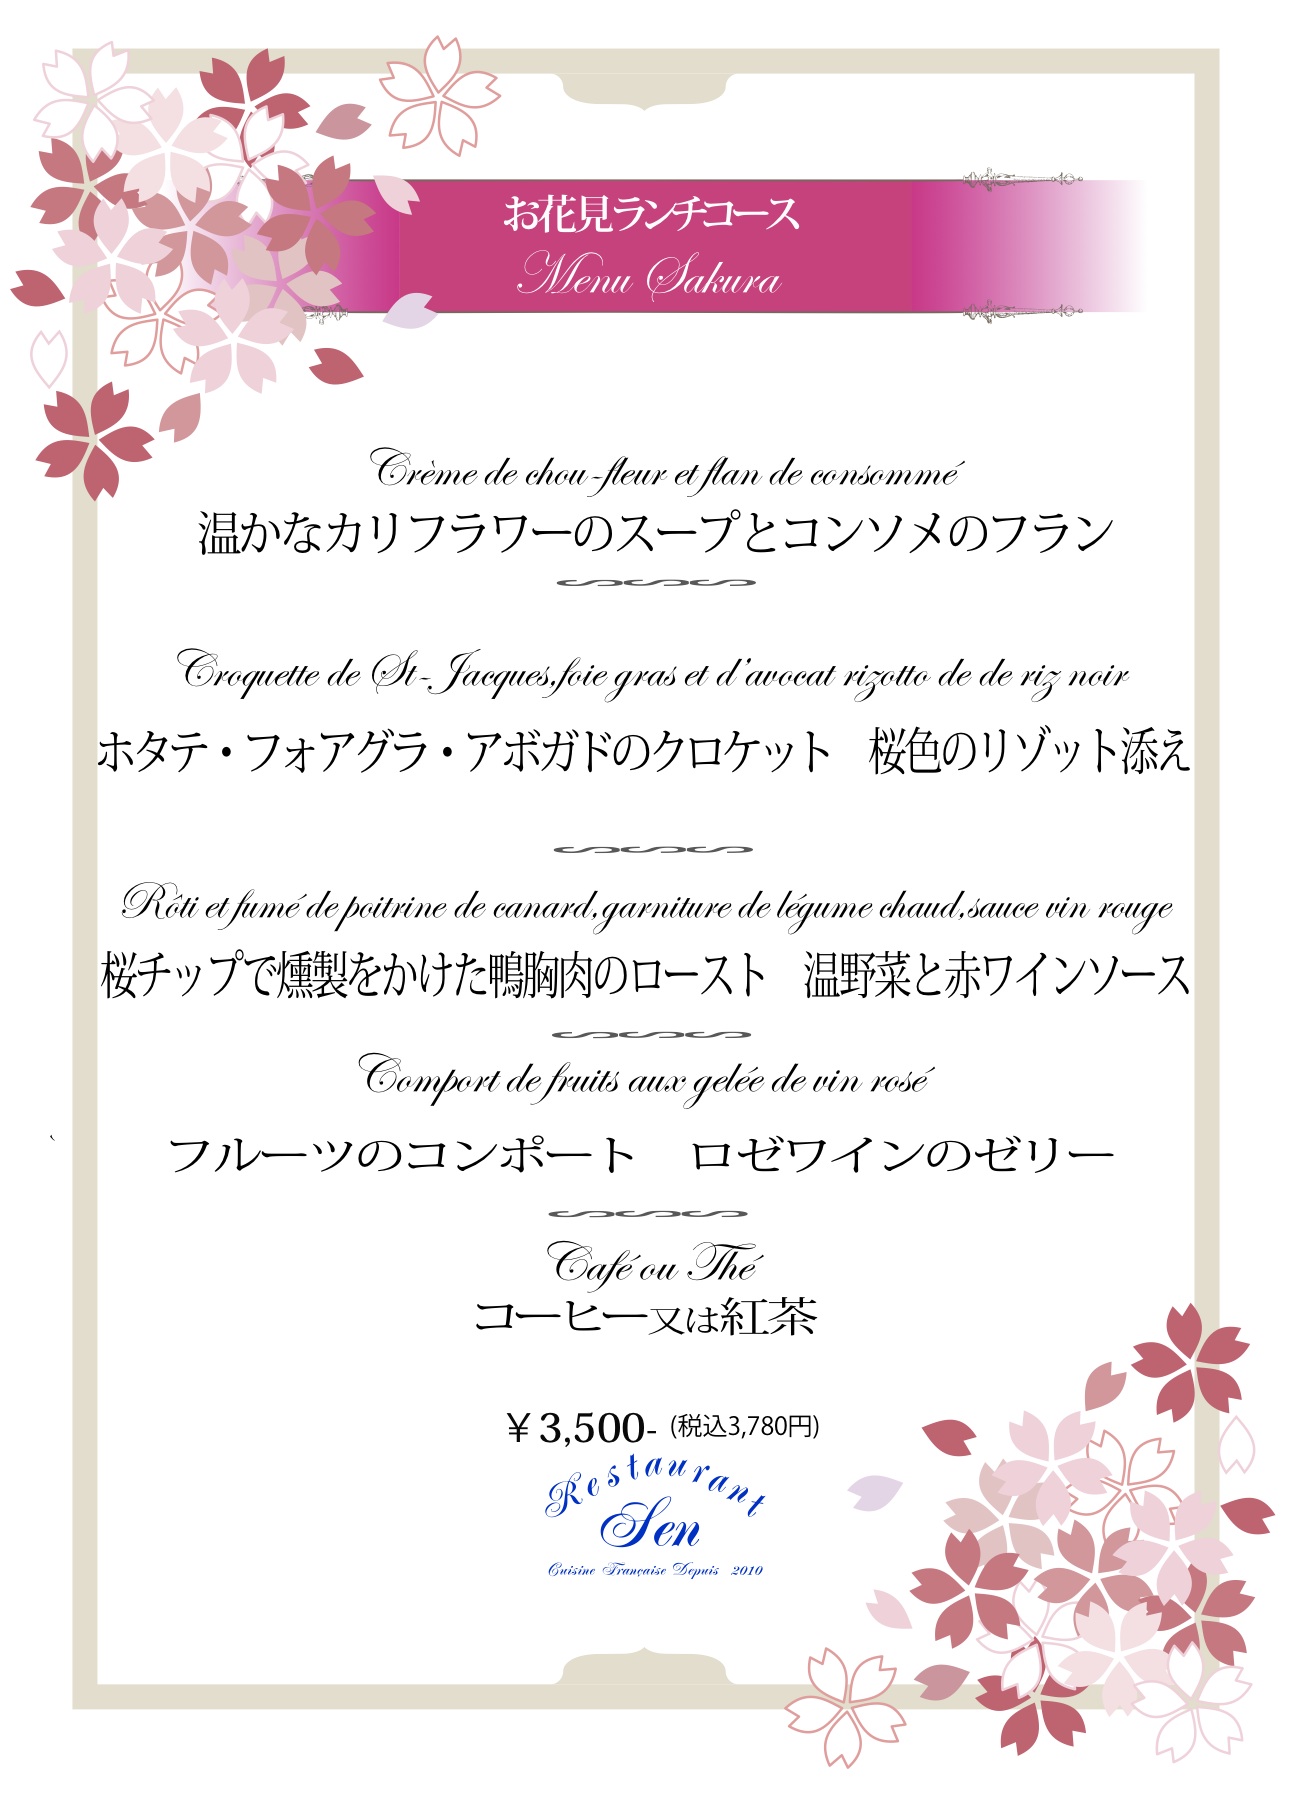 お花見ランチメニュー3,500円2016.3.18〜4.10